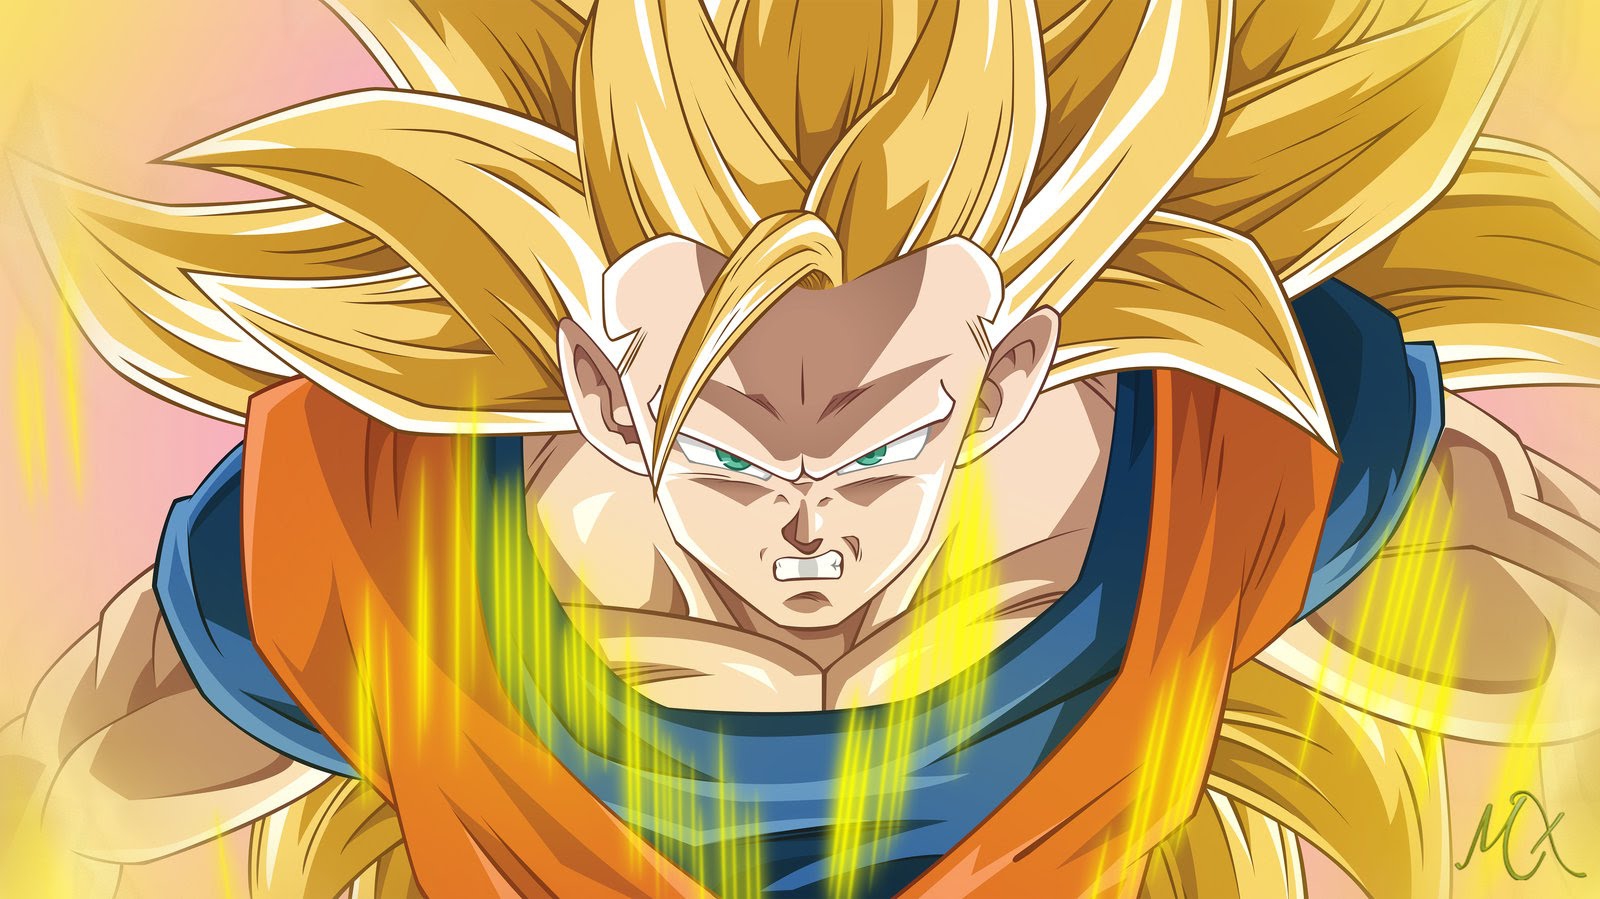 Super Saiyan 3: Hãy đến và khám phá sức mạnh của Super Saiyan 3, khi các tóc của anh chàng Goku kéo dài và biến thành một tuyệt tác nghệ thuật. Xem ảnh để hiểu thêm về sức mạnh siêu phàm của nhân vật.